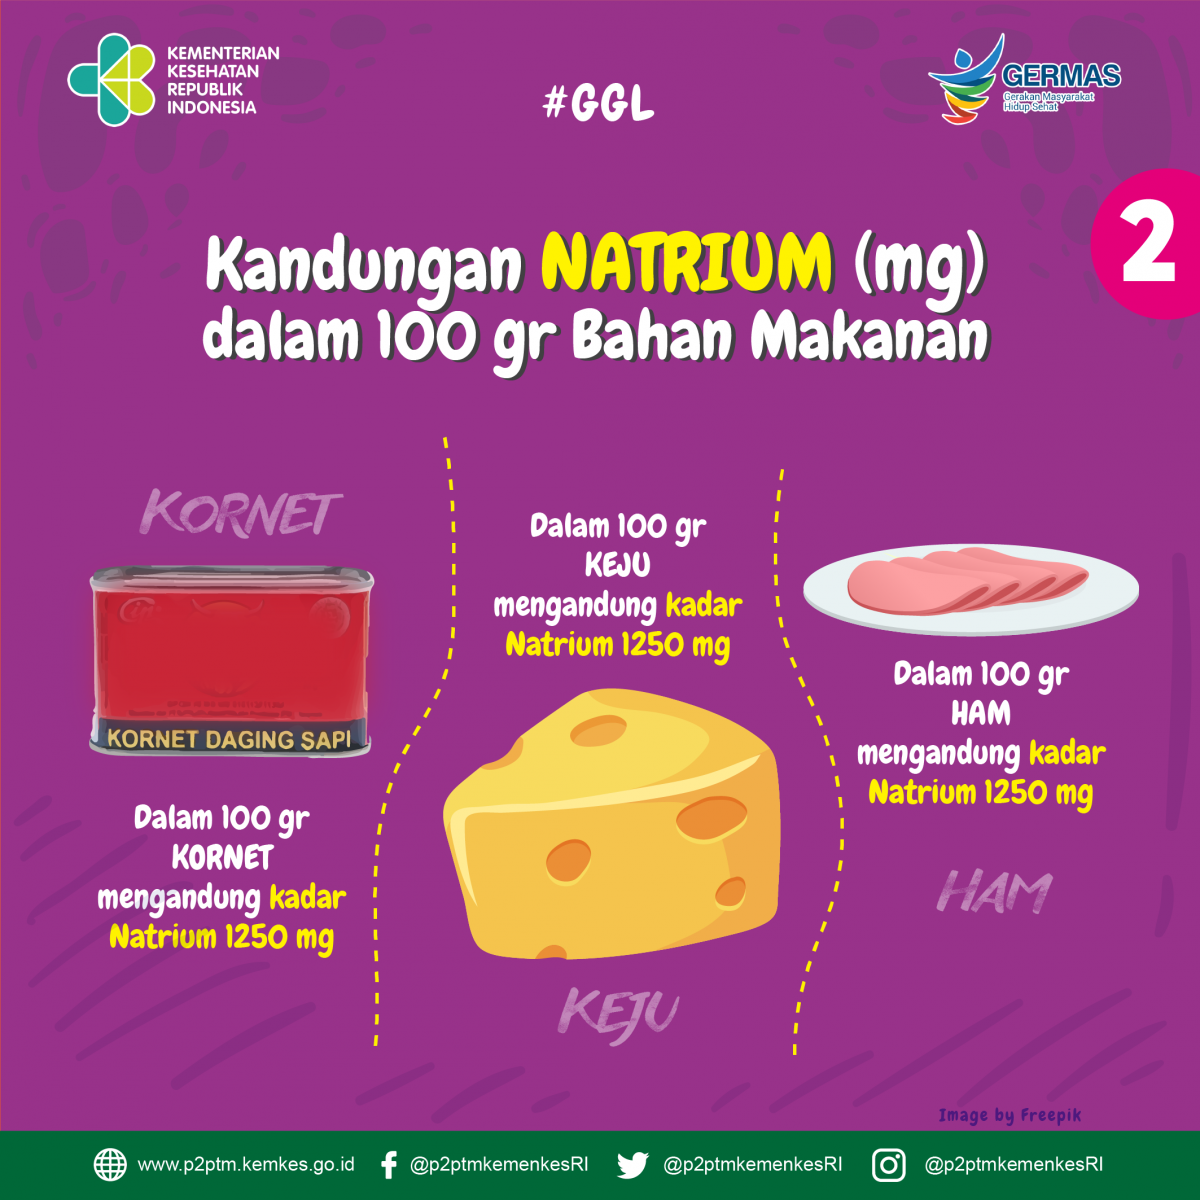 Kandungan Natrium dalam 100 gr bahan makanan kornet, keju dan ham